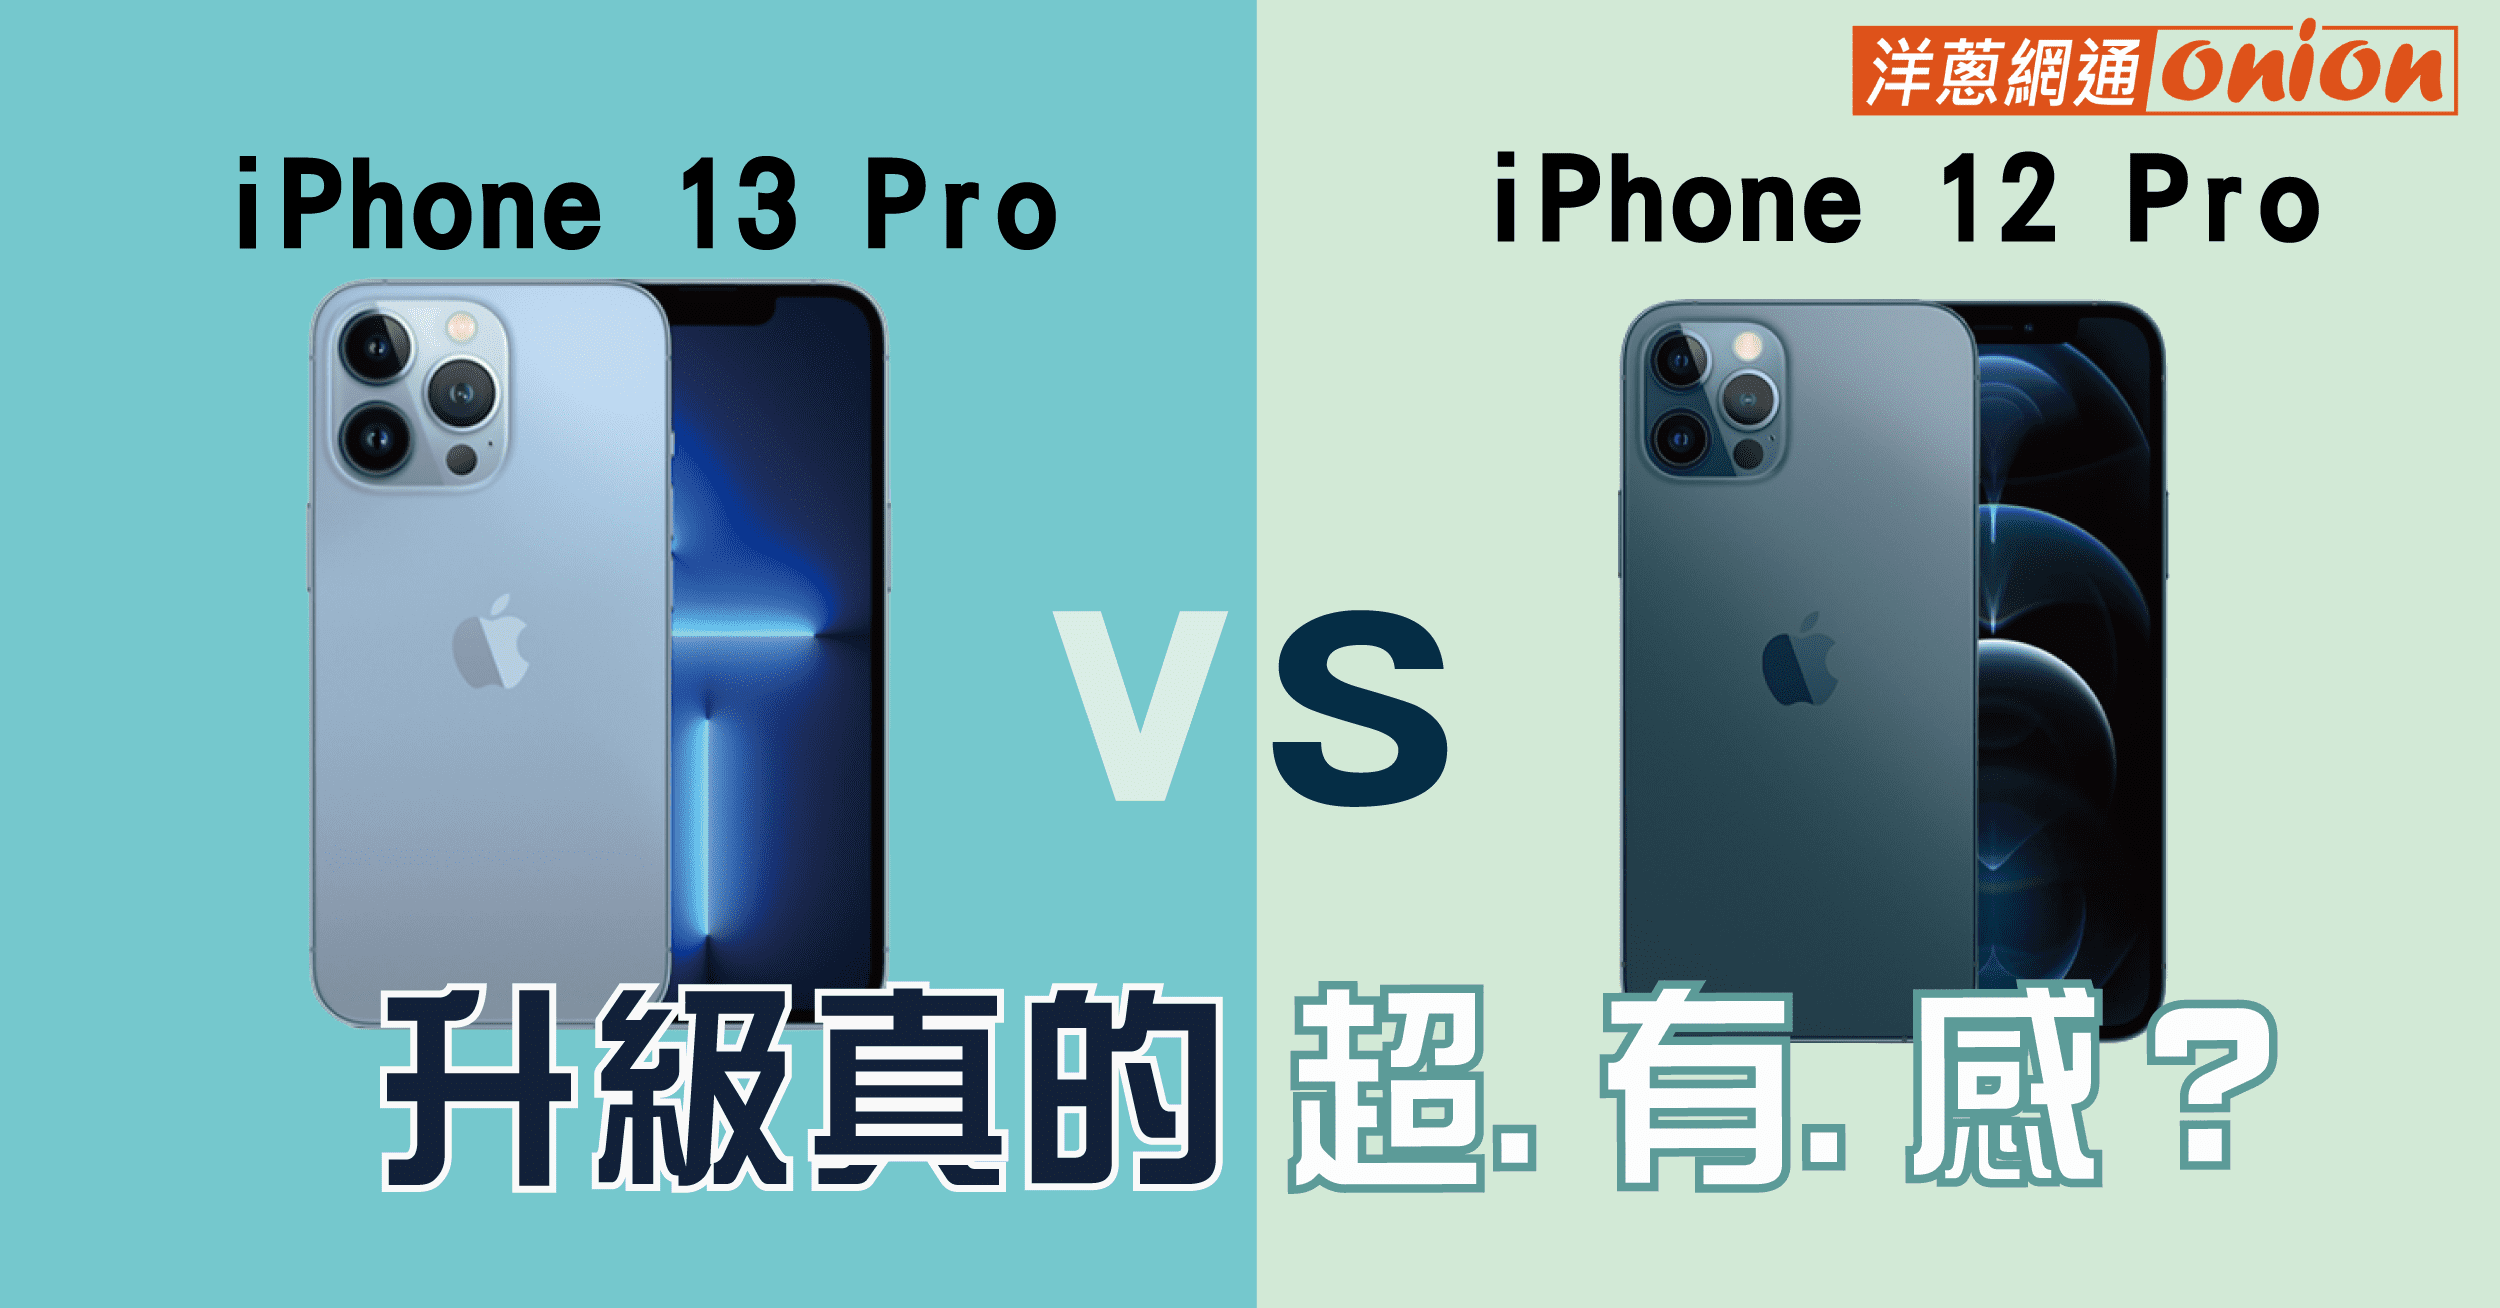 iPhone 12 pro 與 iPhone 13 pro 規格比較,升級真的超.有.感 ?